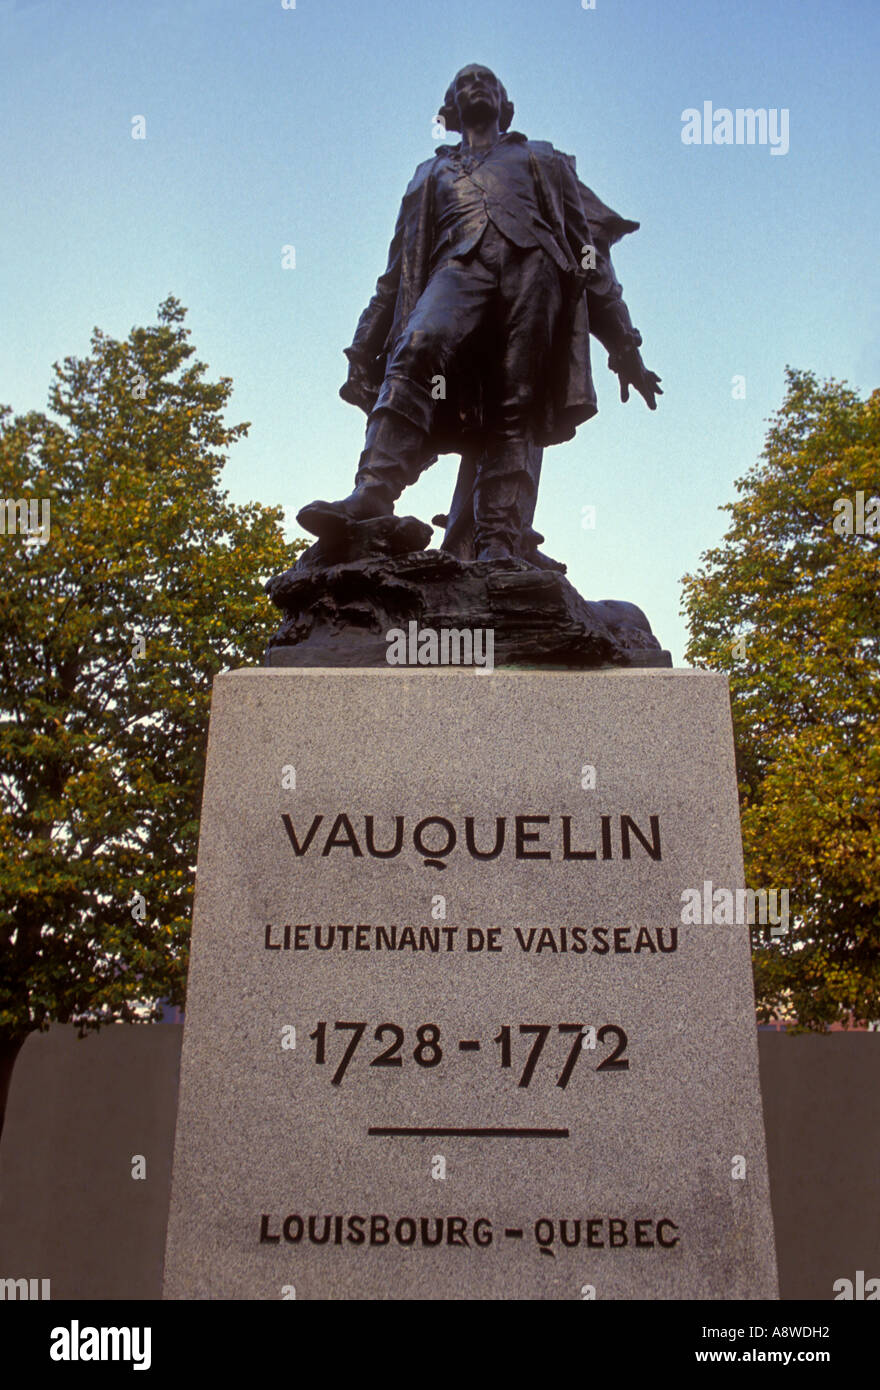 Statue en bronze de Jean Vauquelin, statue de bronze, Jean Vauquelin, Place Vauquelin, ville de Montréal, Montréal, Québec, Canada, Amérique du Nord Banque D'Images